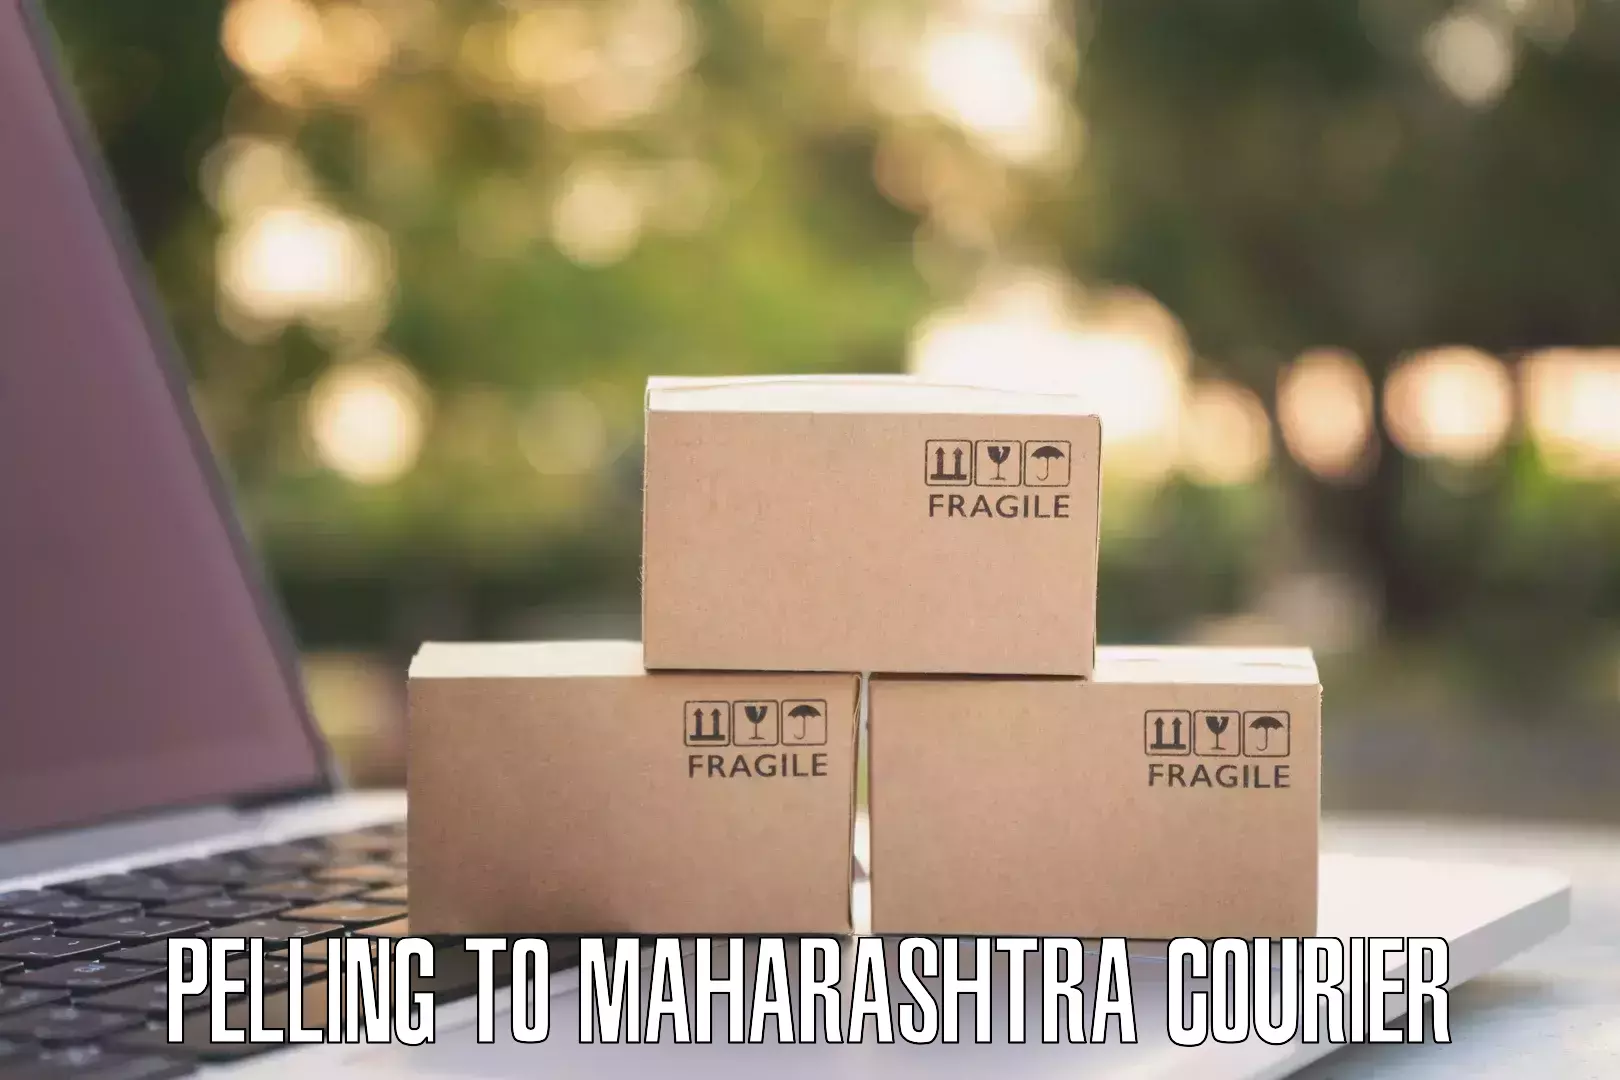 Express logistics Pelling to Maharashtra